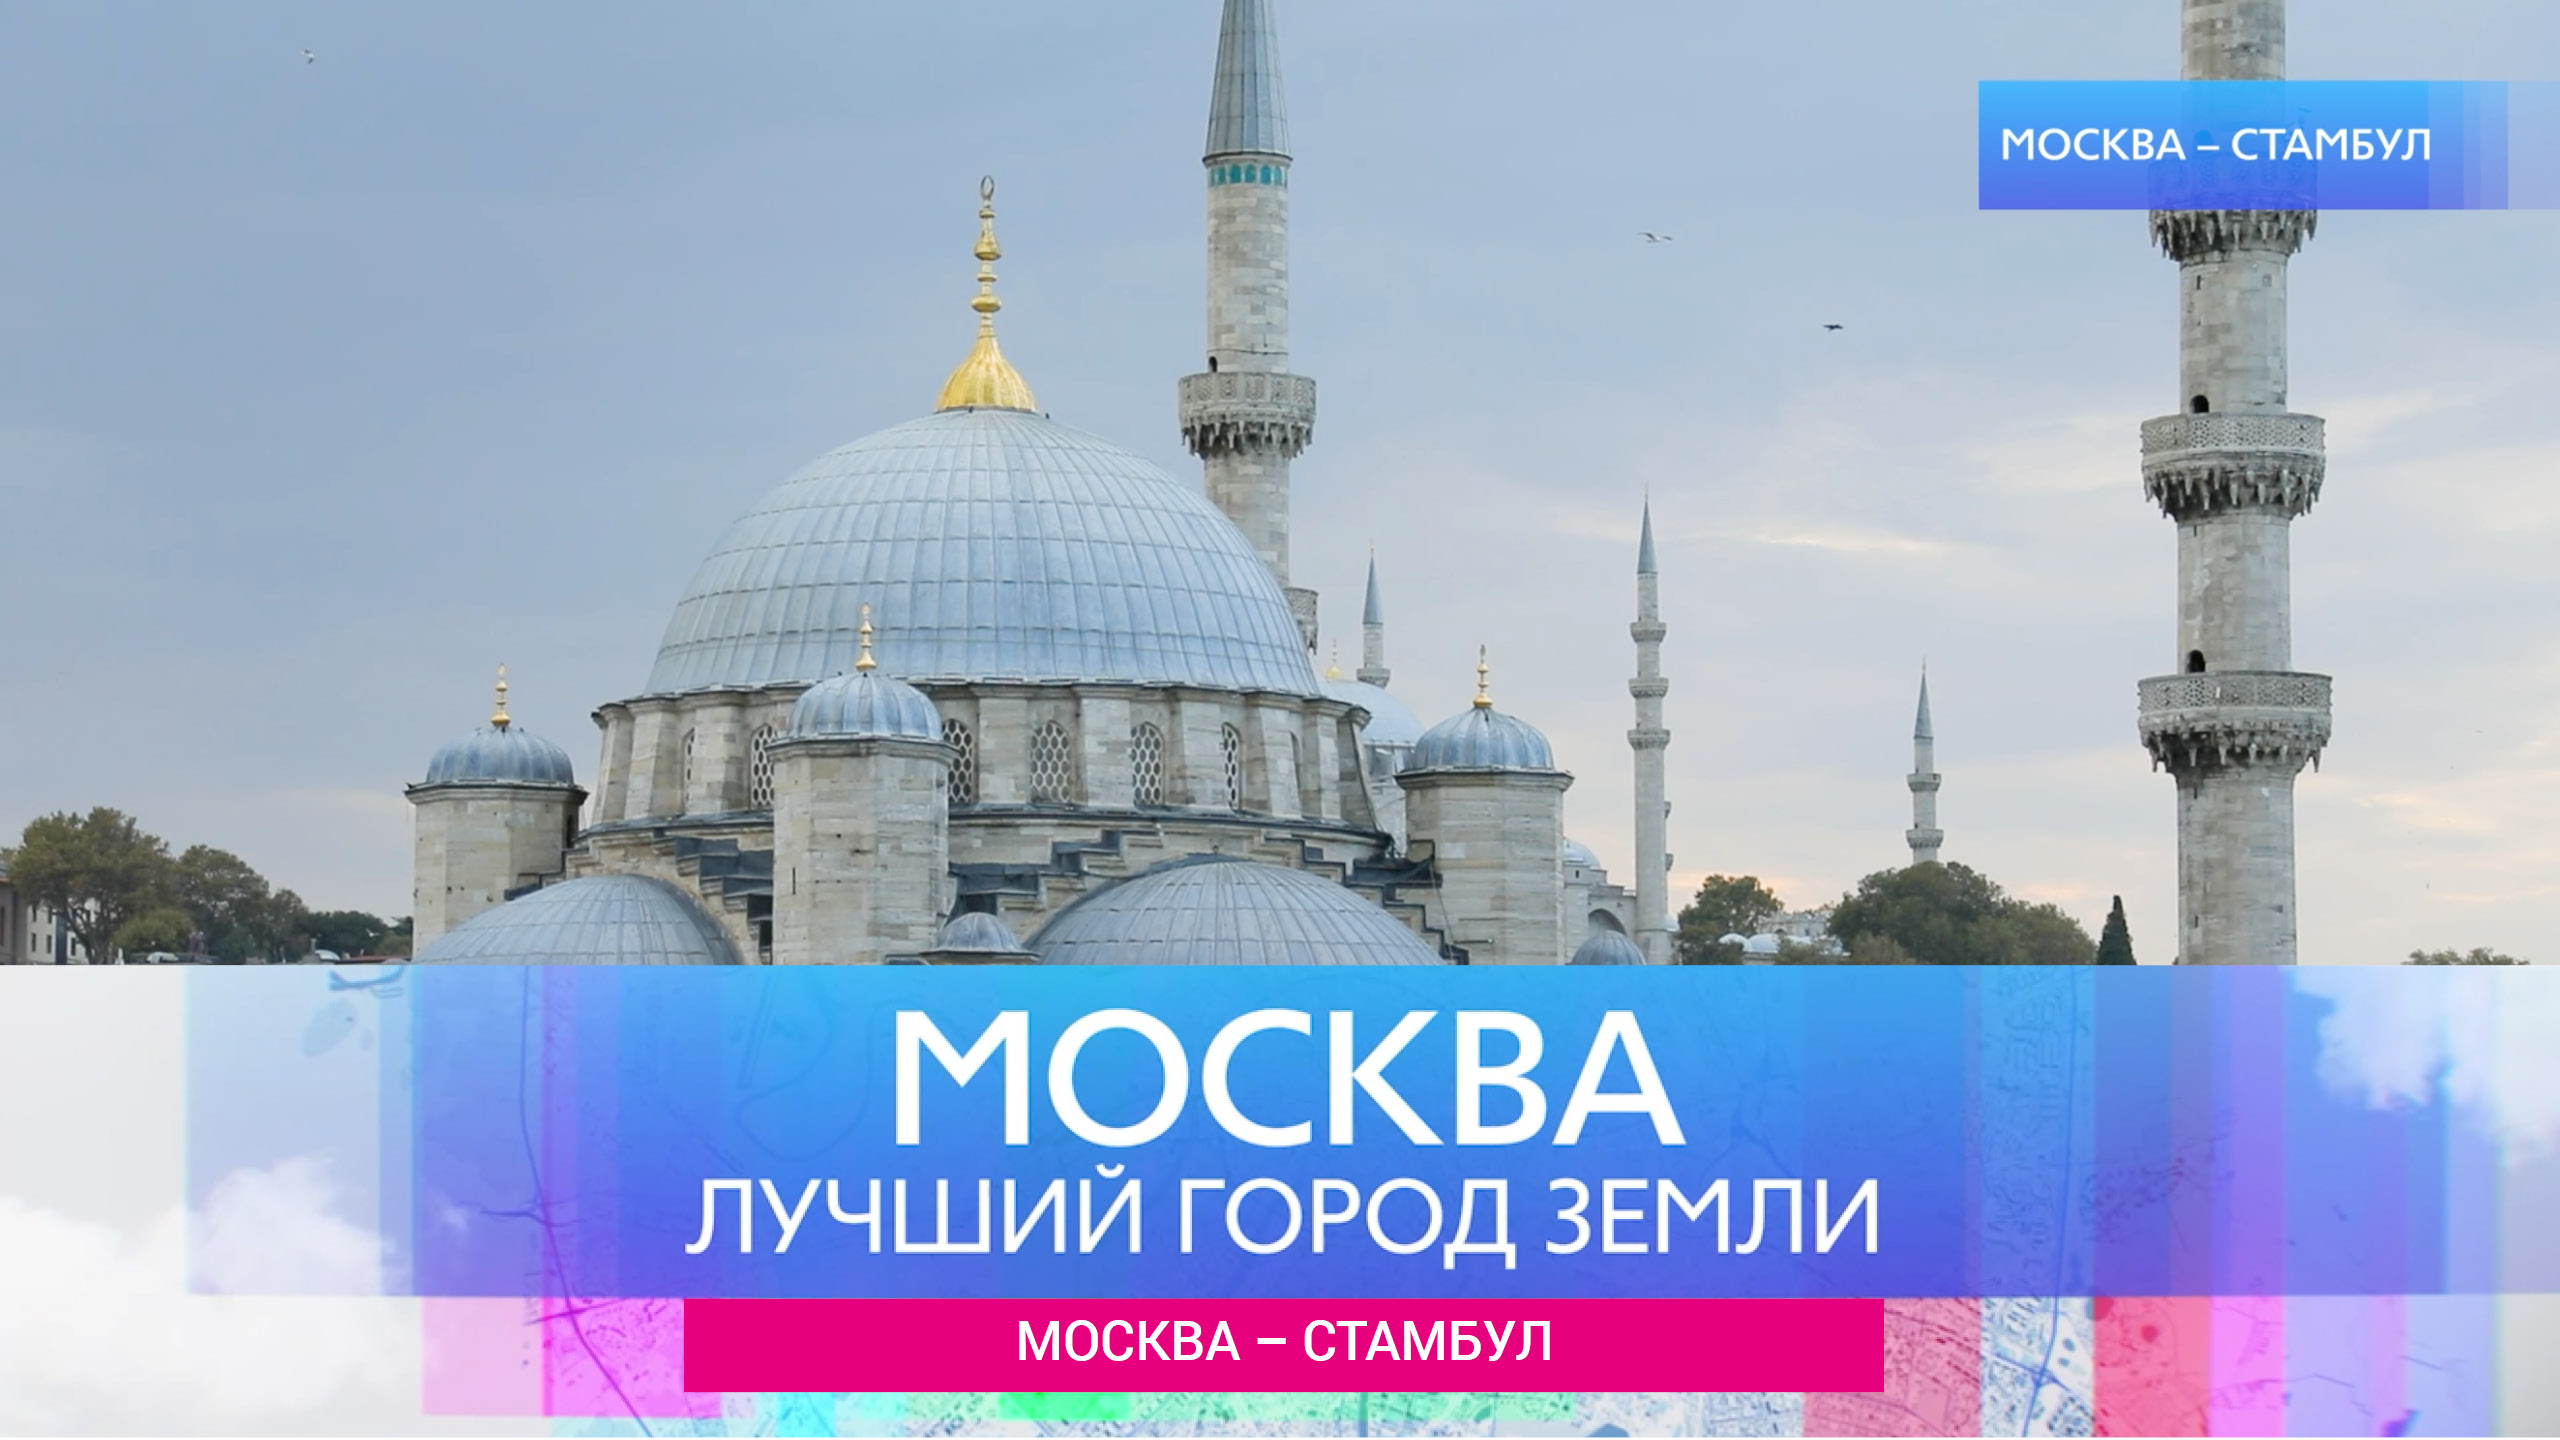 "Москва – лучший город земли" - Москва-Стамбул